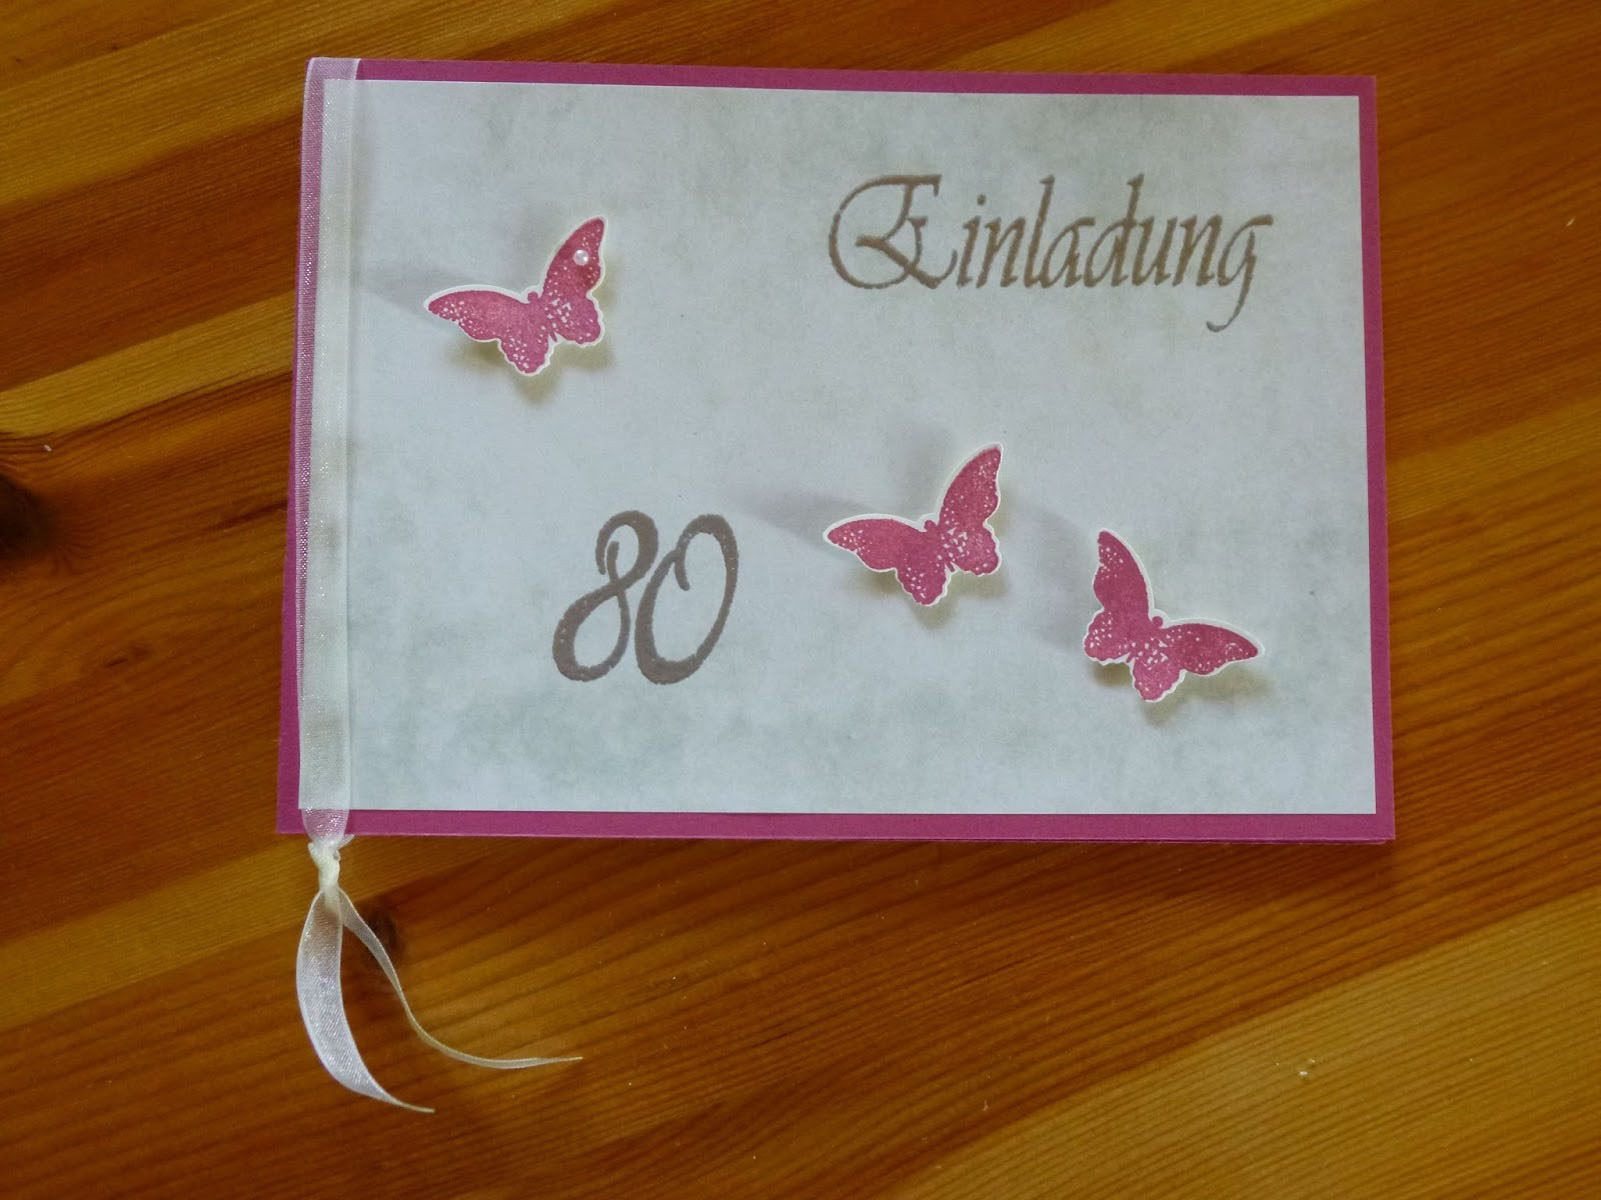 Geburtstagssprüche Zum 80 Geburtstag
 Einladung Zum 80 Geburtstag Einladung Zum 80 Geburtstag